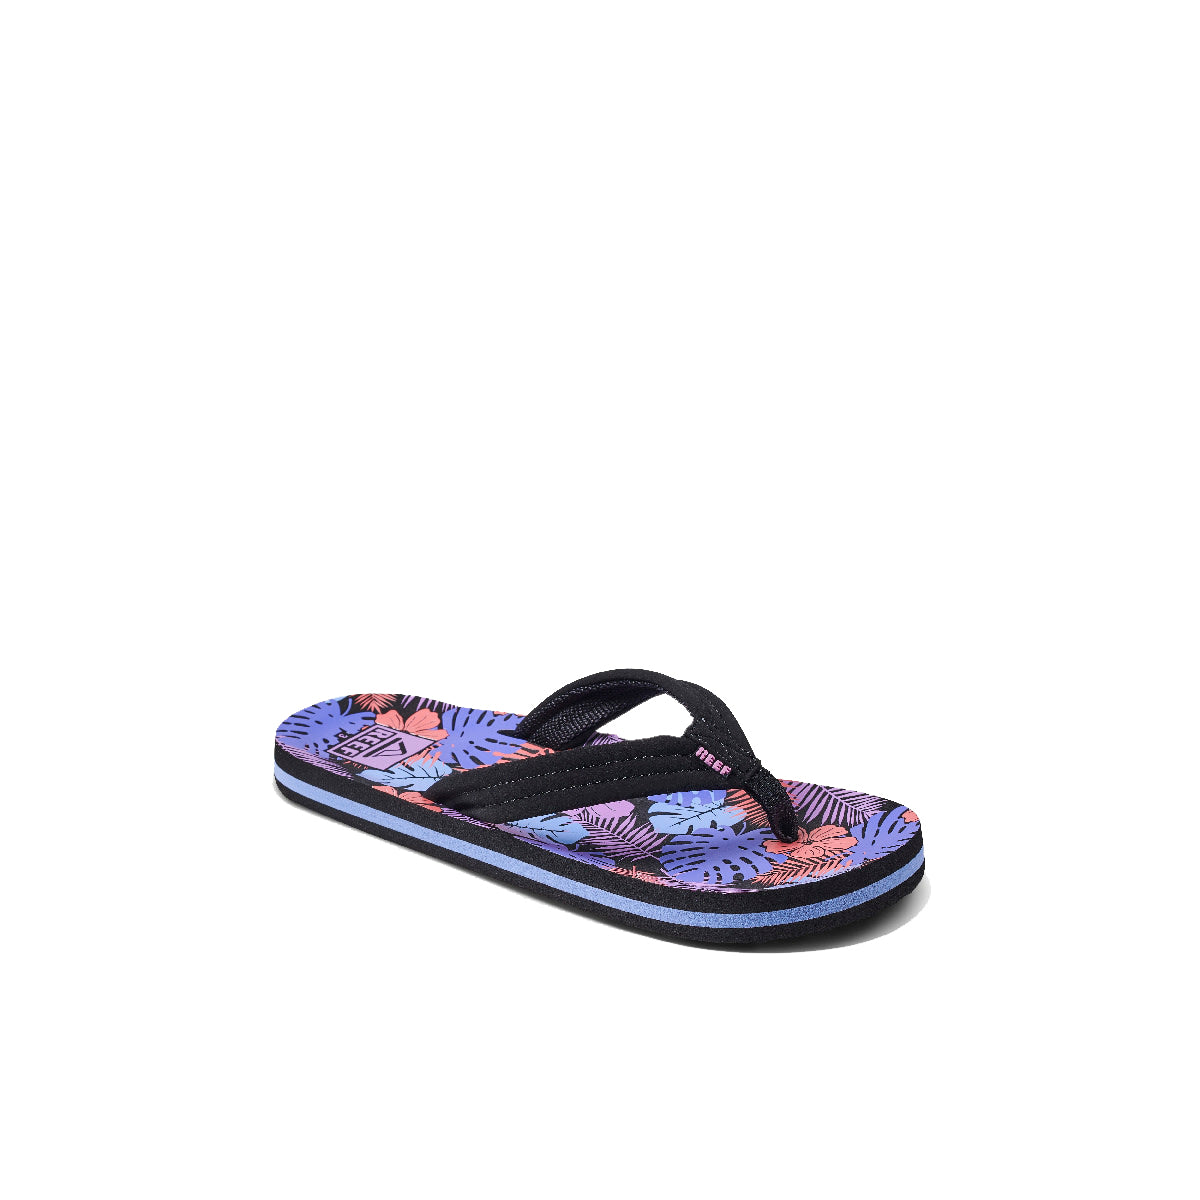 Reef Ahi Girls Sandal Purple Fronds 4 Y